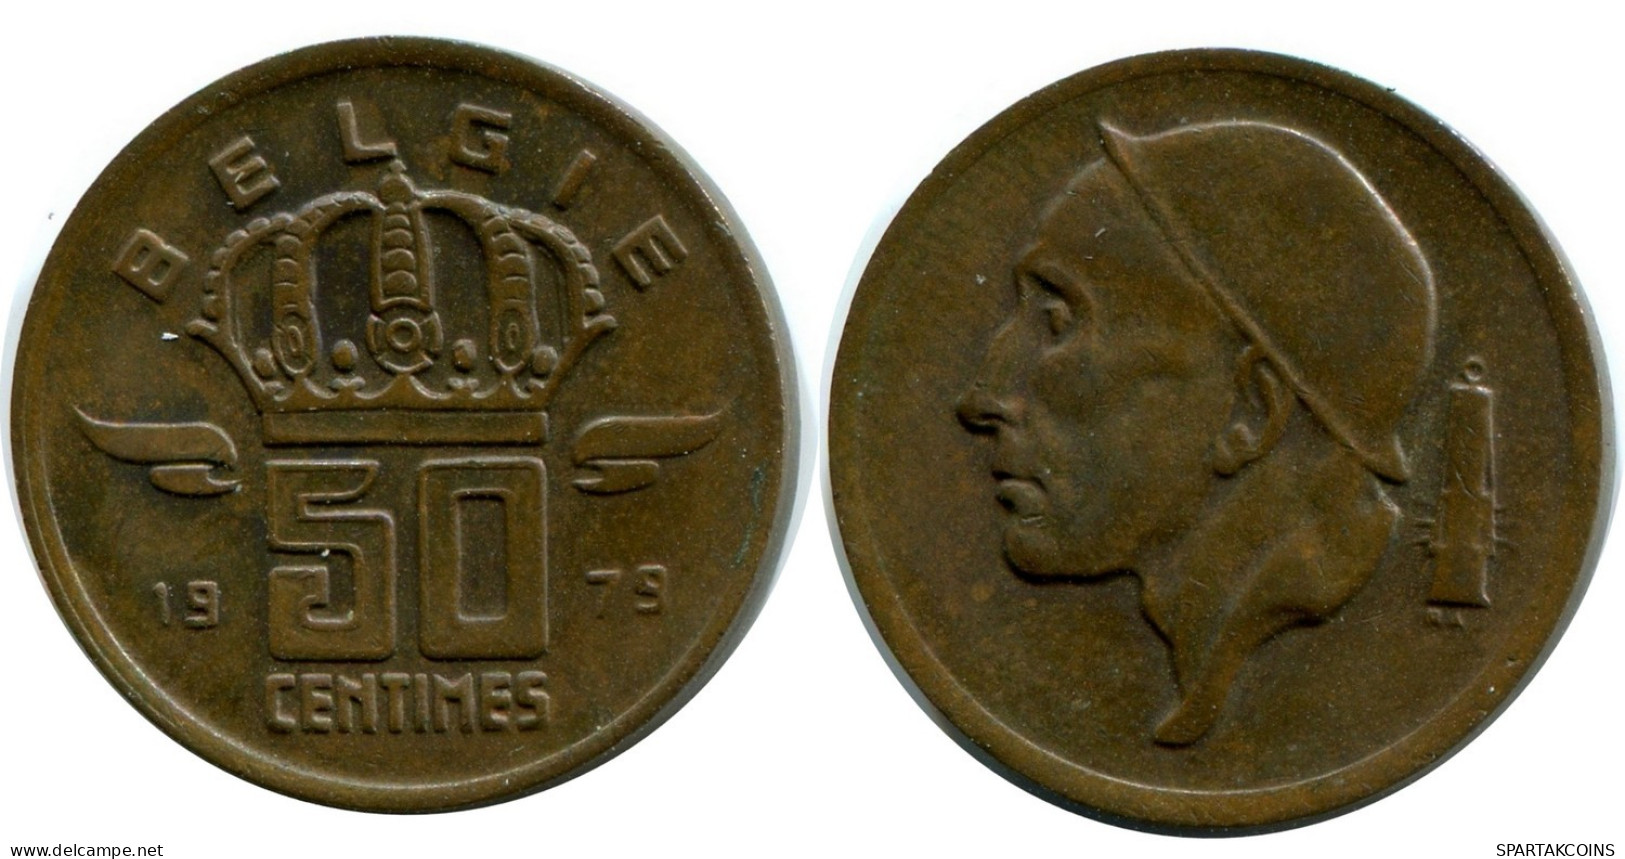 50 CENTIMES 1979 DUTCH Text BELGIUM Coin #AW925.U.A - 50 Cents